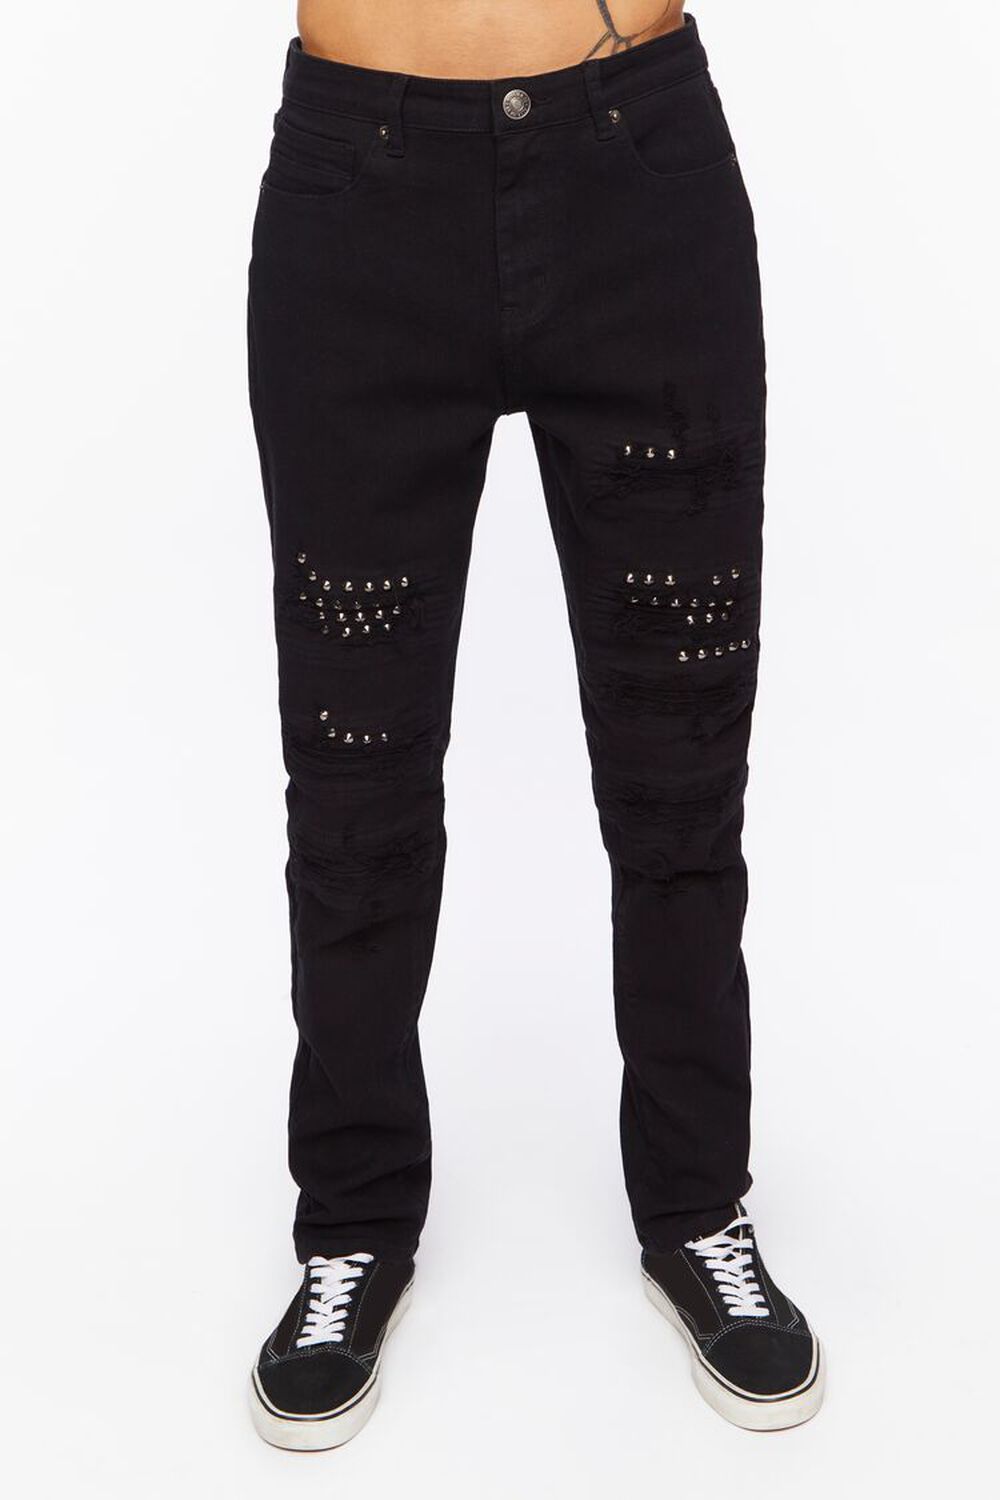 BLACK Studded Slim-Fit Jeans, image 1